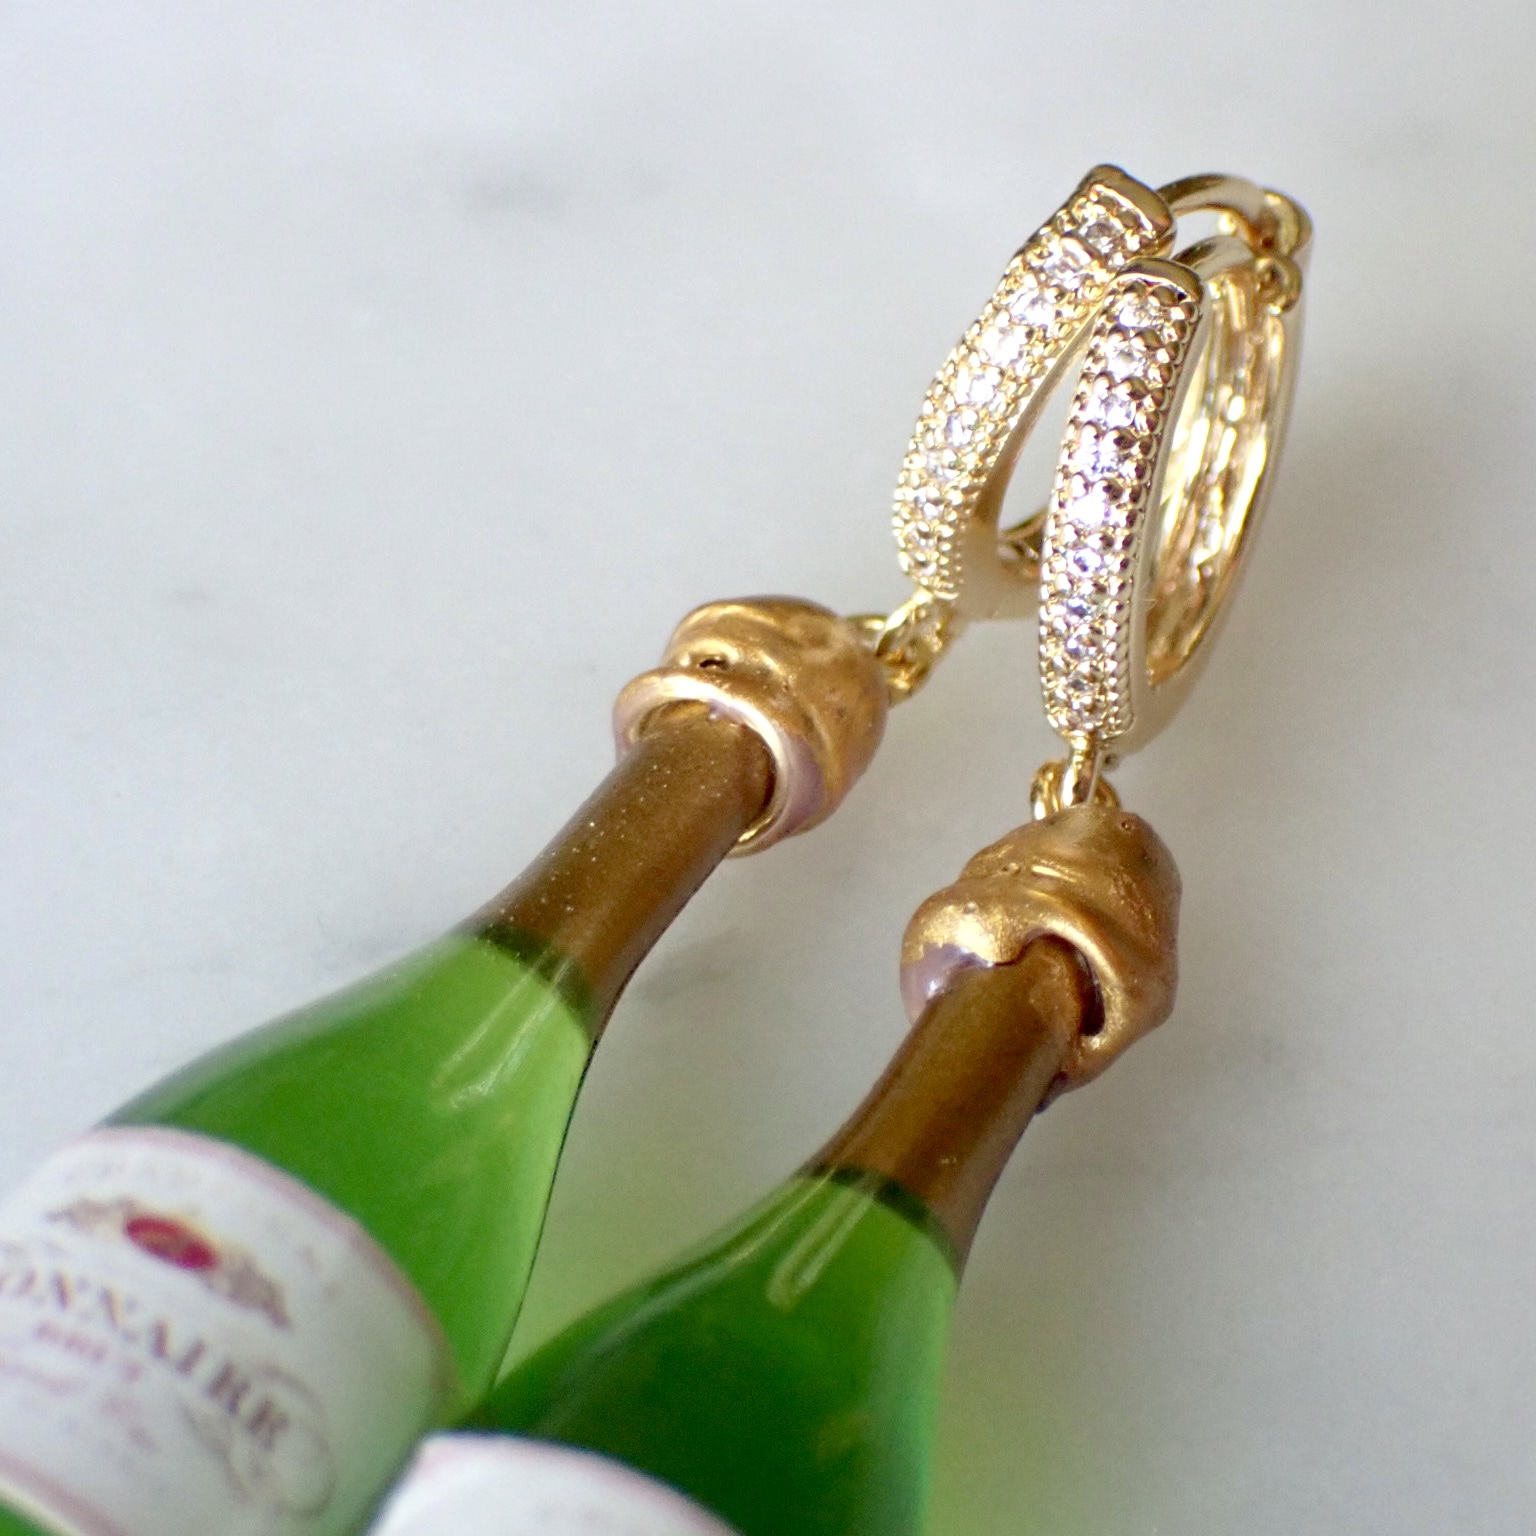 Champagne / bubbel örhängen med creol/ stift / krok